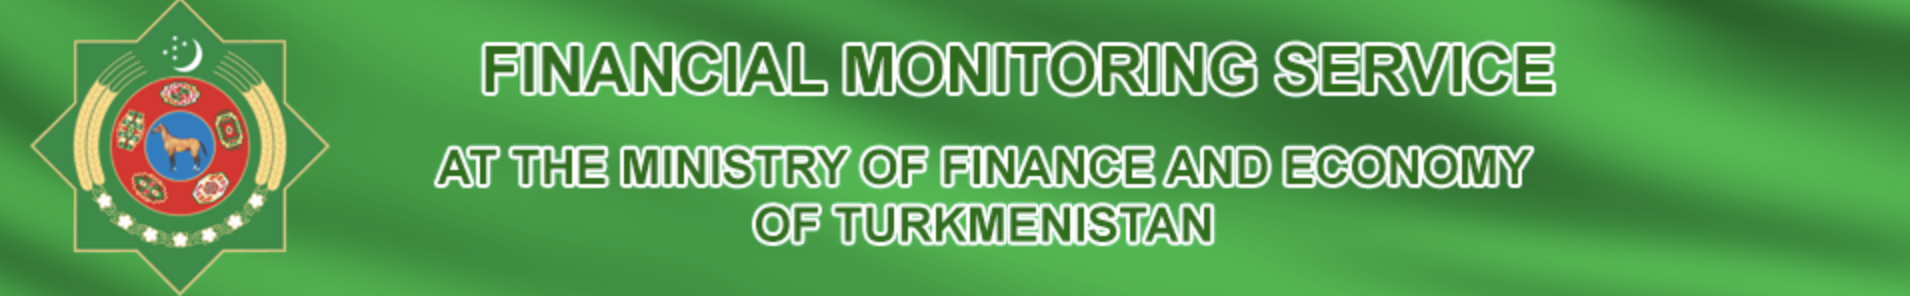 Logotipo del Ministerio de Finanzas de Turkmenistán